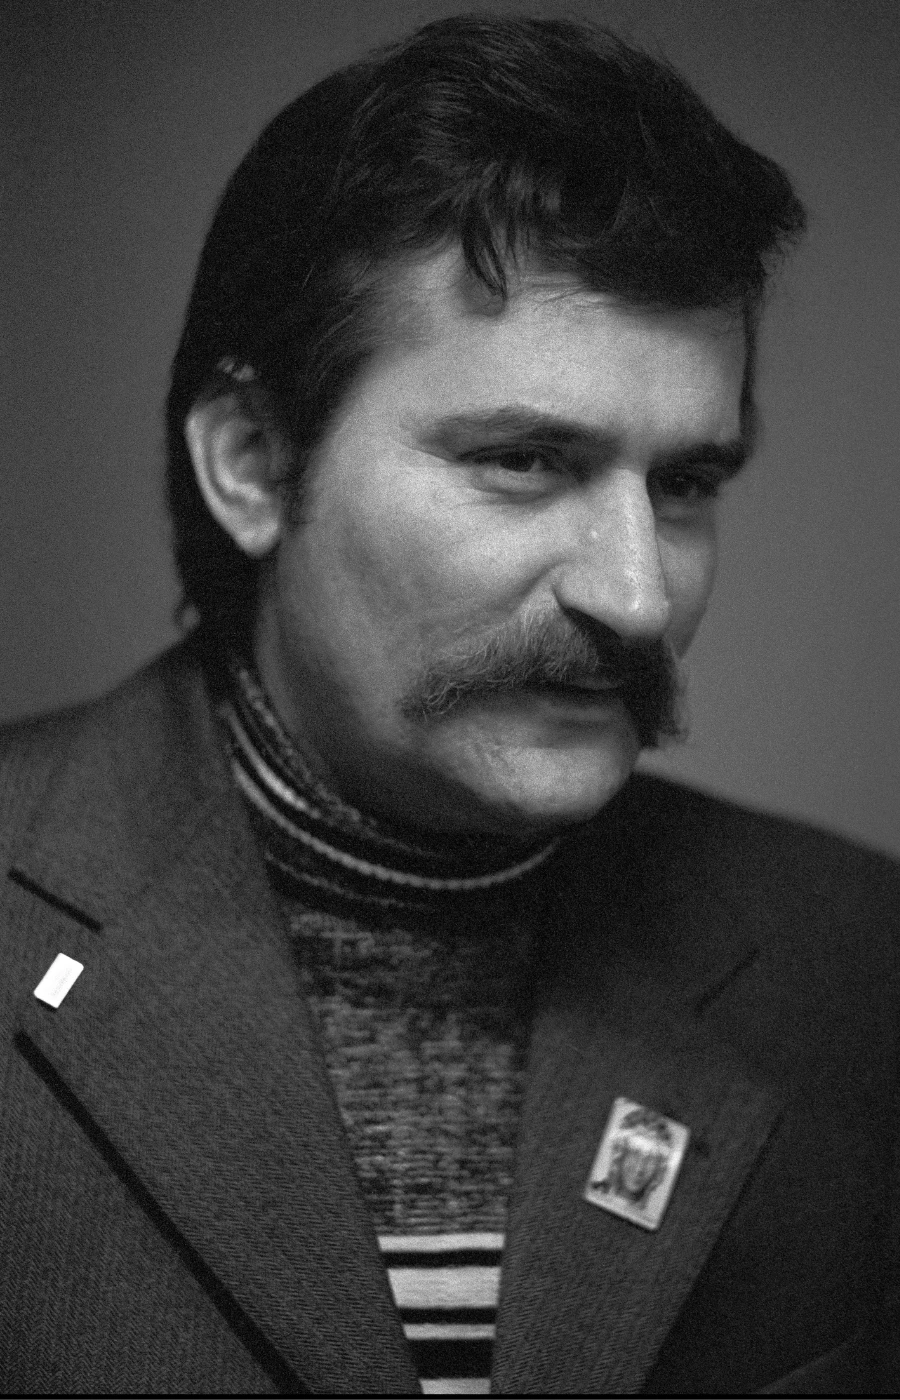 Polscy nobliści: Lech Wałęsa (Fot. Chuck Fishman/Getty Images)